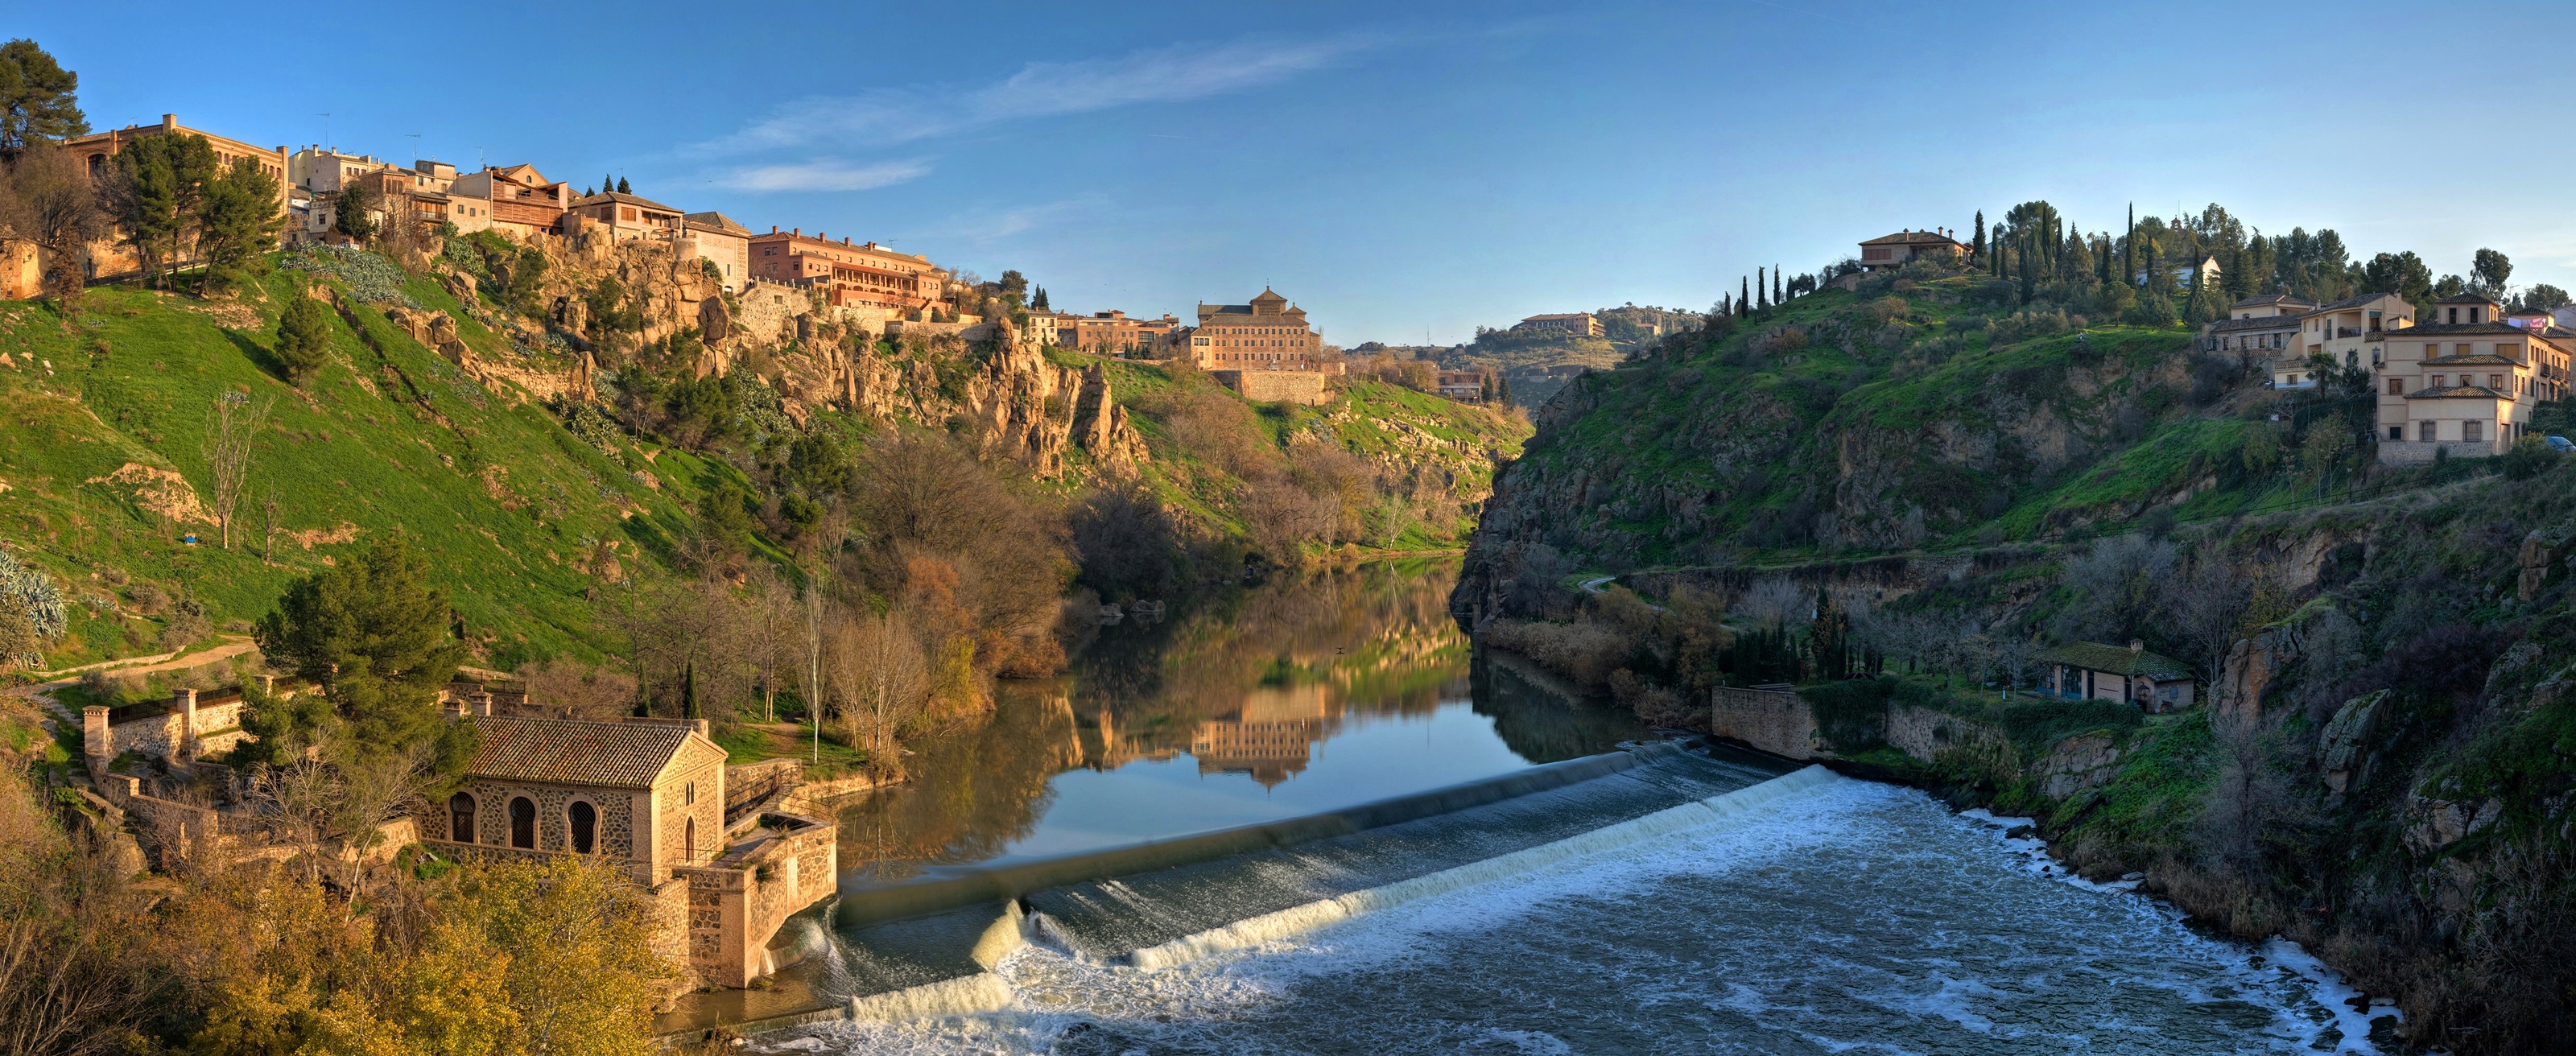 Toledo, las cuevas de Hércules y la Leyenda de la Mesa del rey Salomón